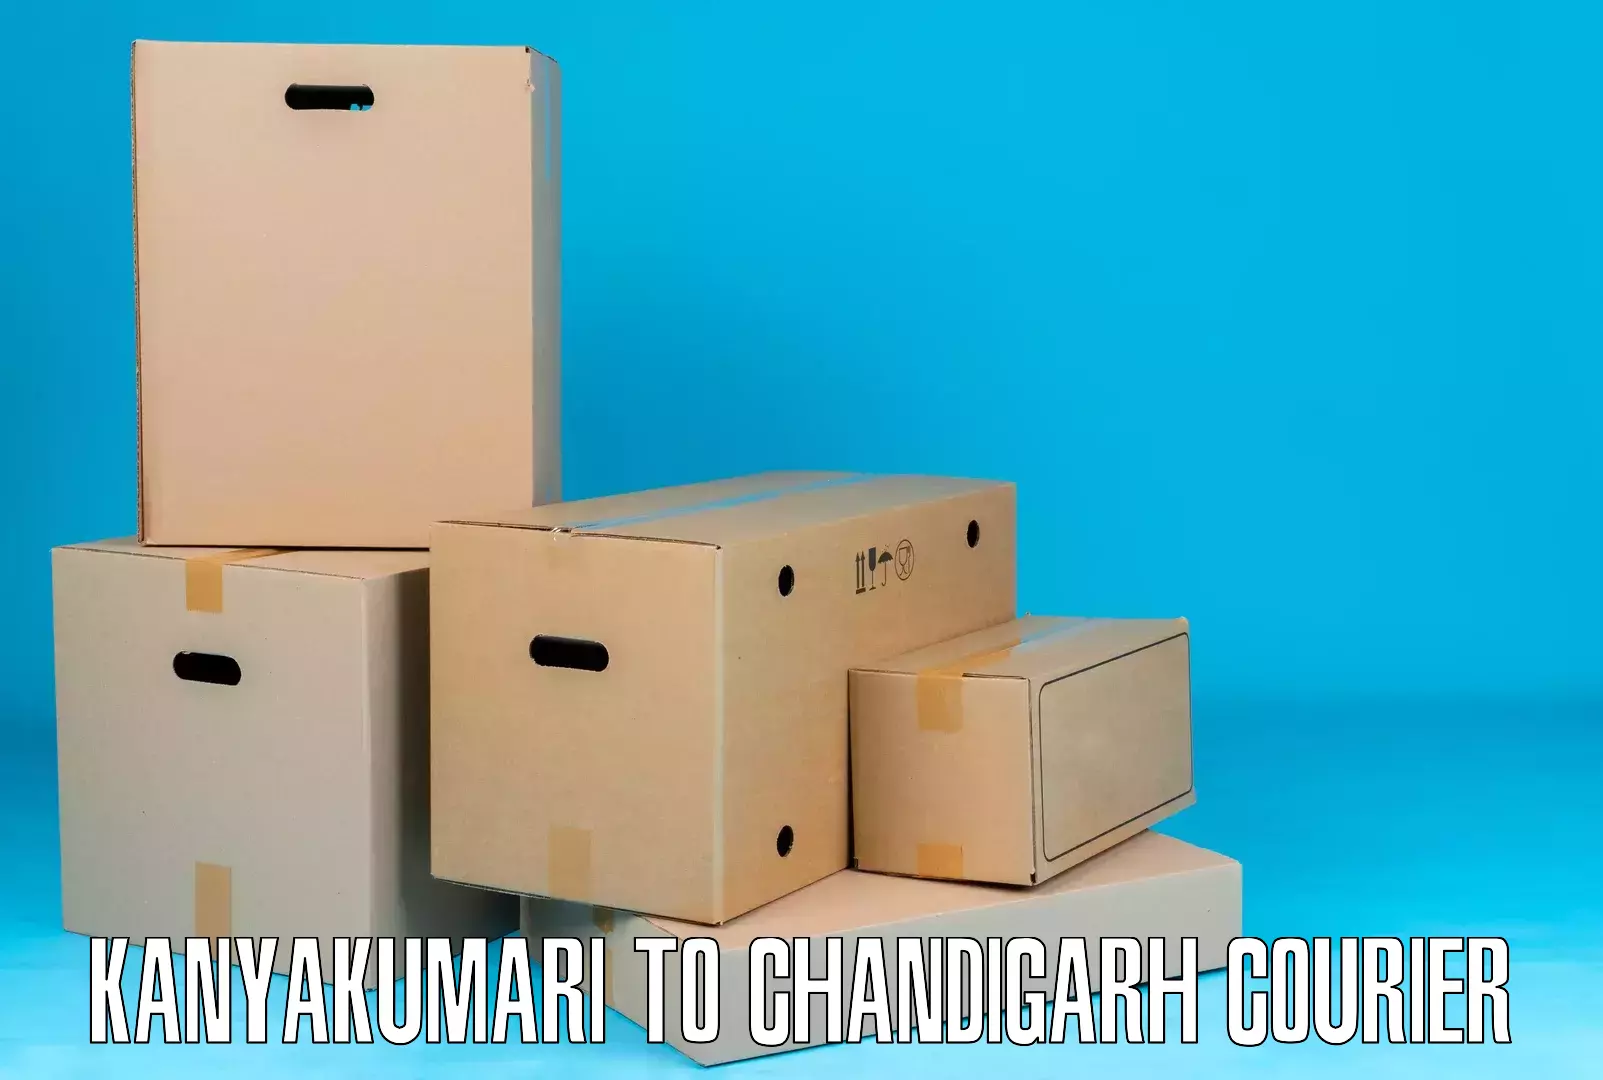 Courier service partnerships Kanyakumari to Chandigarh